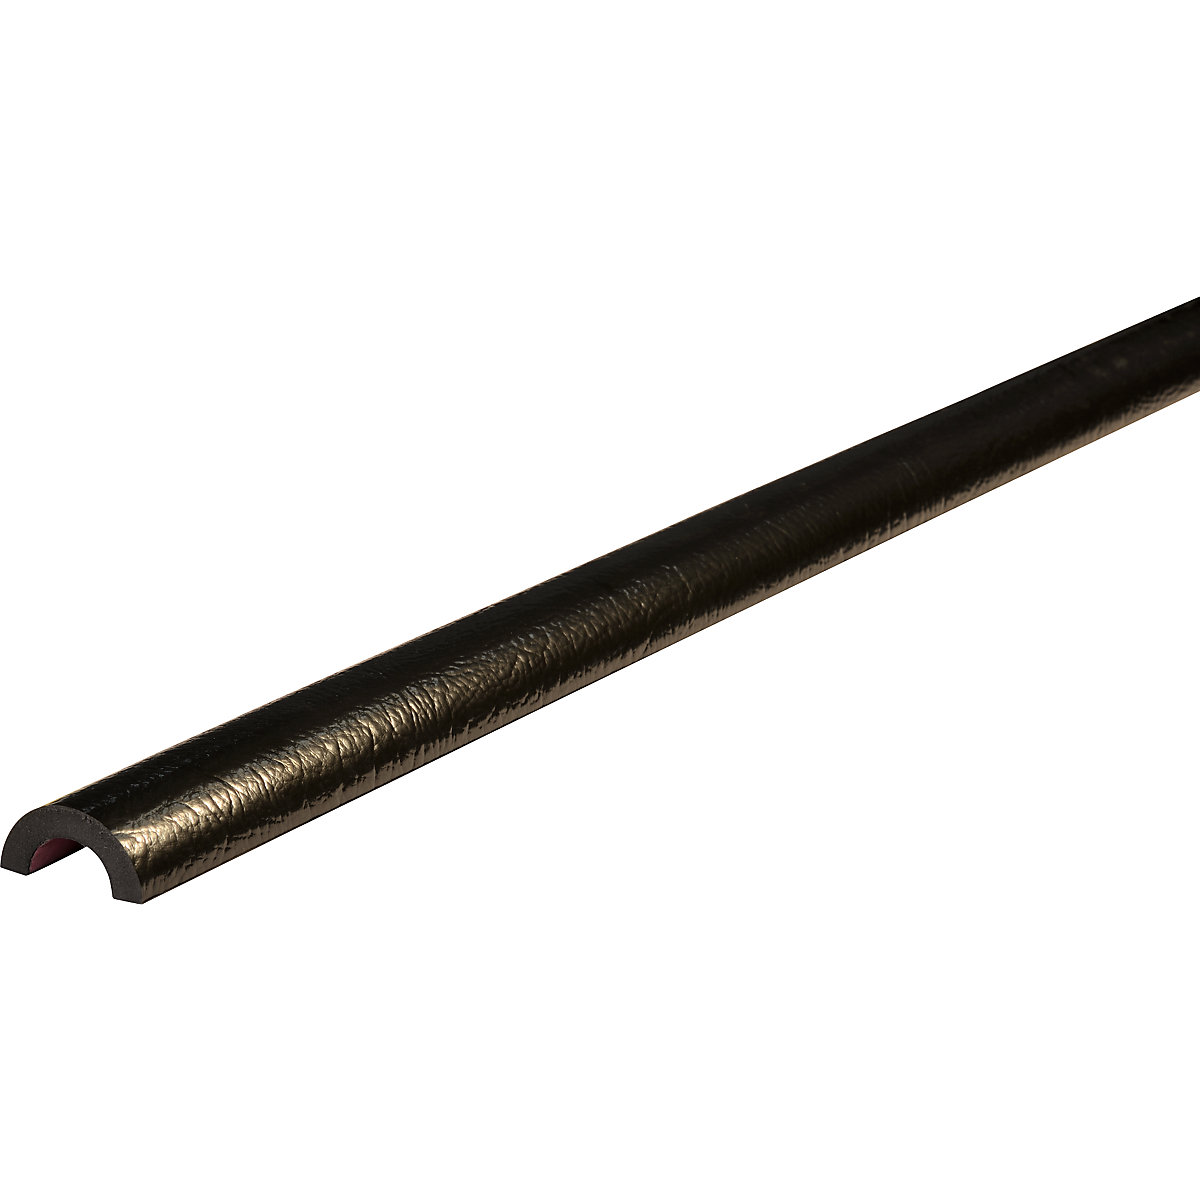 Protezione tubolare Knuffi® – SHG, tipo R30, 1 rotolo da 50 m, nero-11